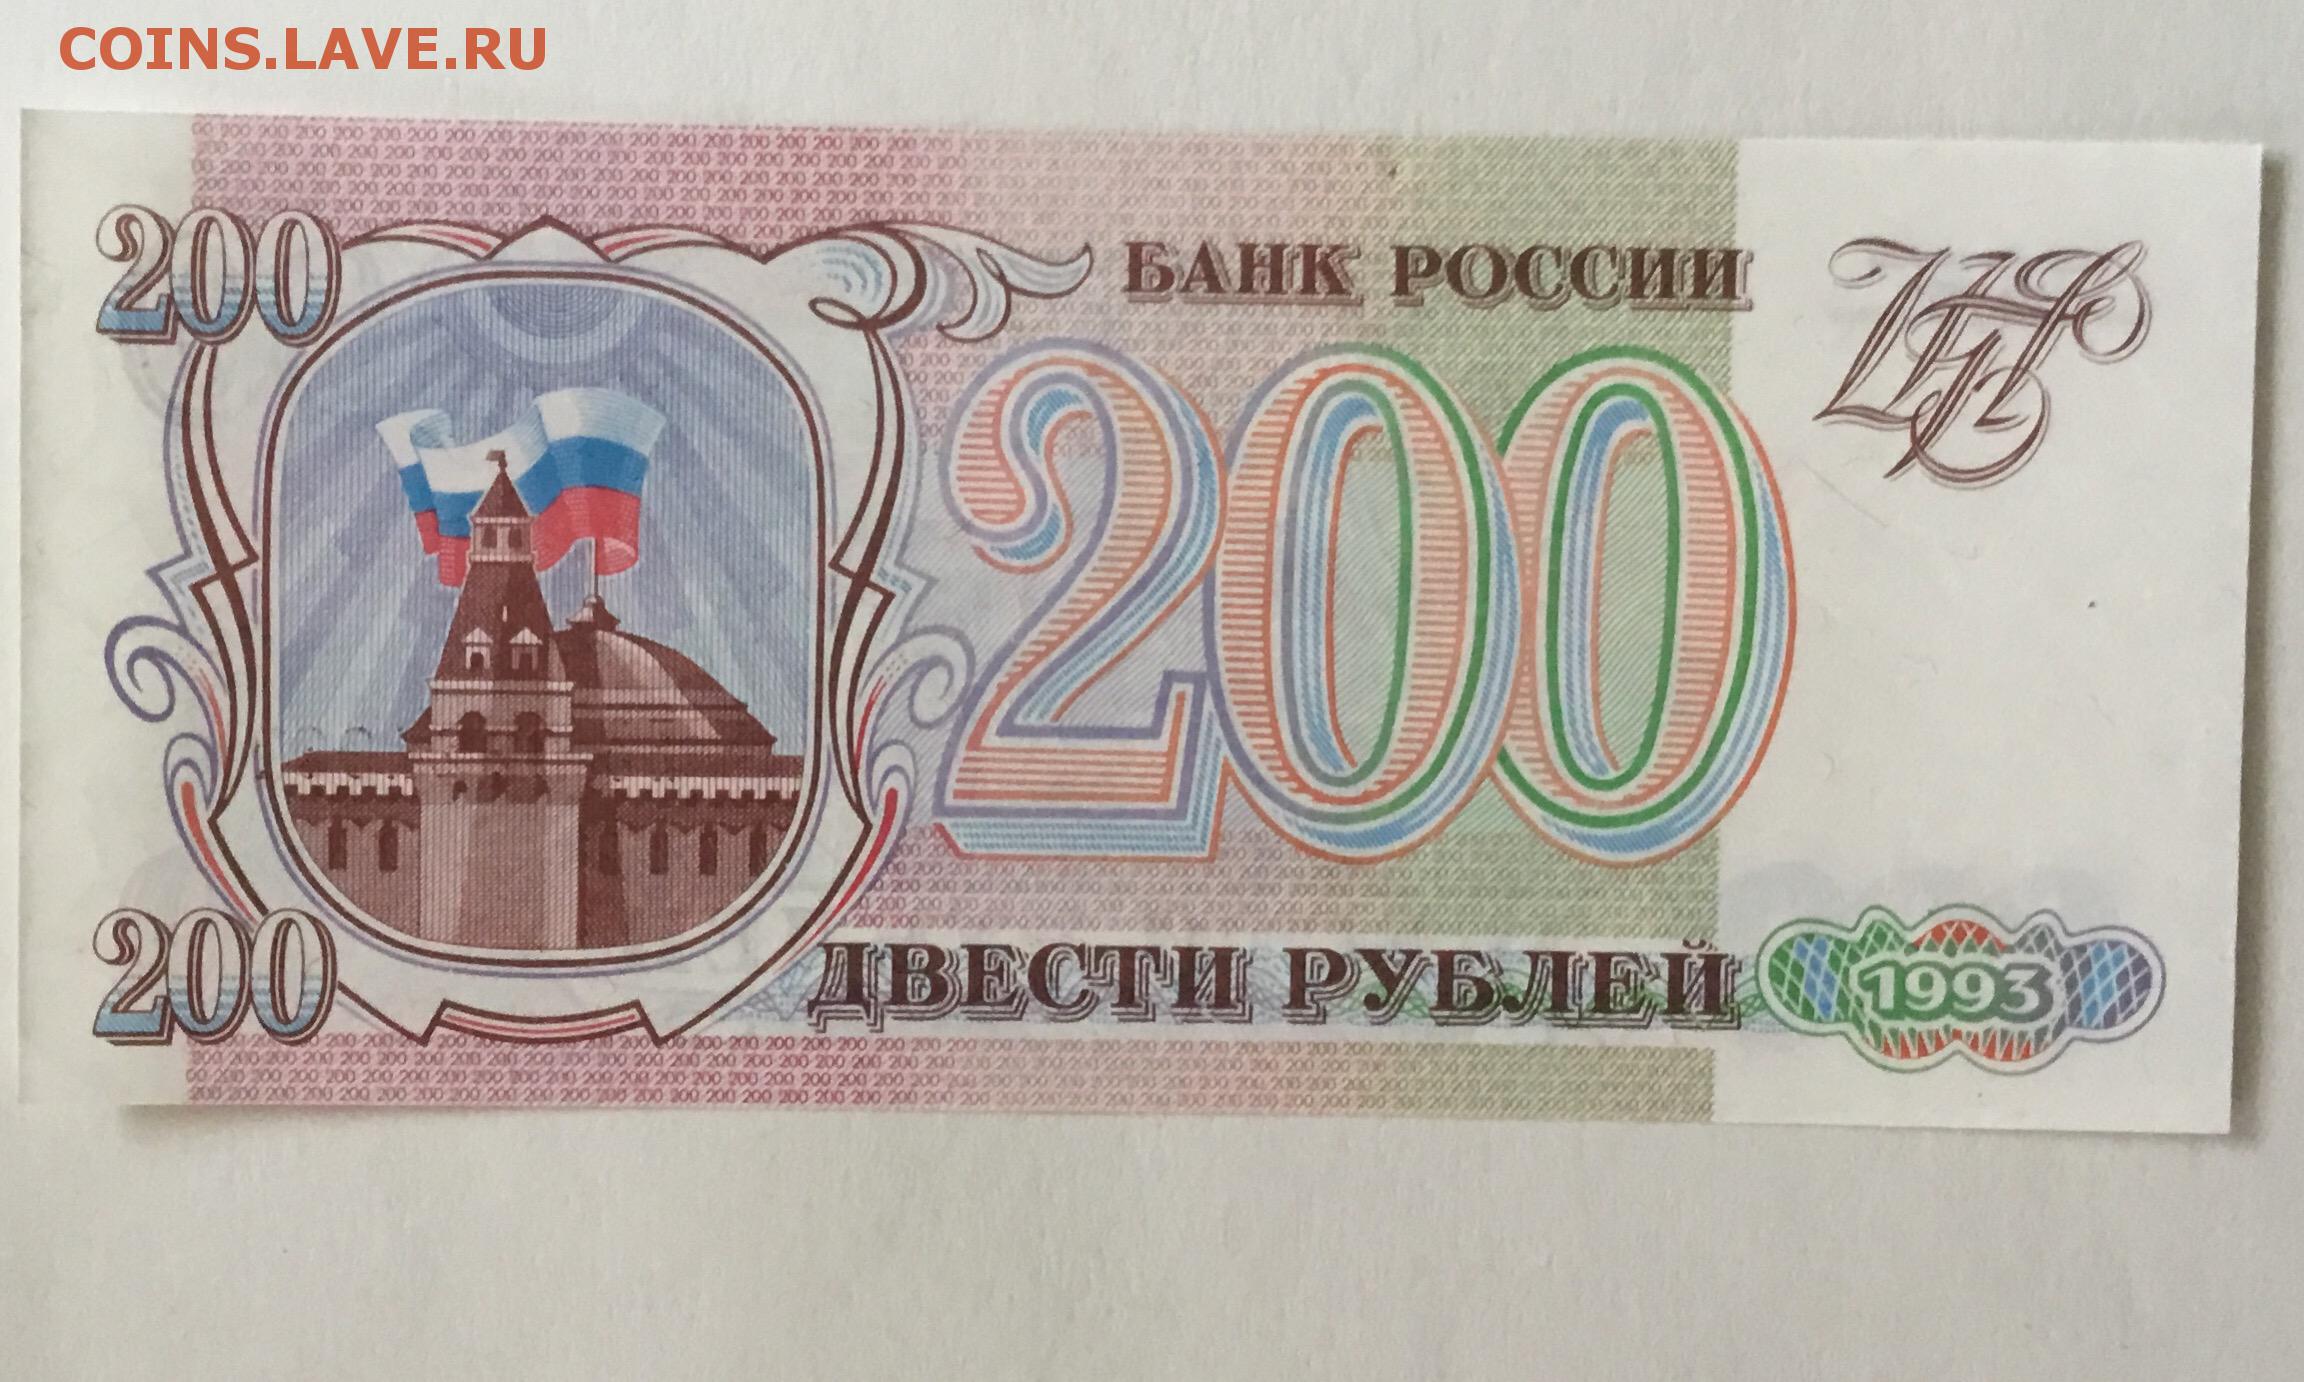 12 200 в рубли. Купюра 200 рублей 1993. 200 Рублей 1993 года. Двести рублей 1993. Банкнота 200 рублей 1993.